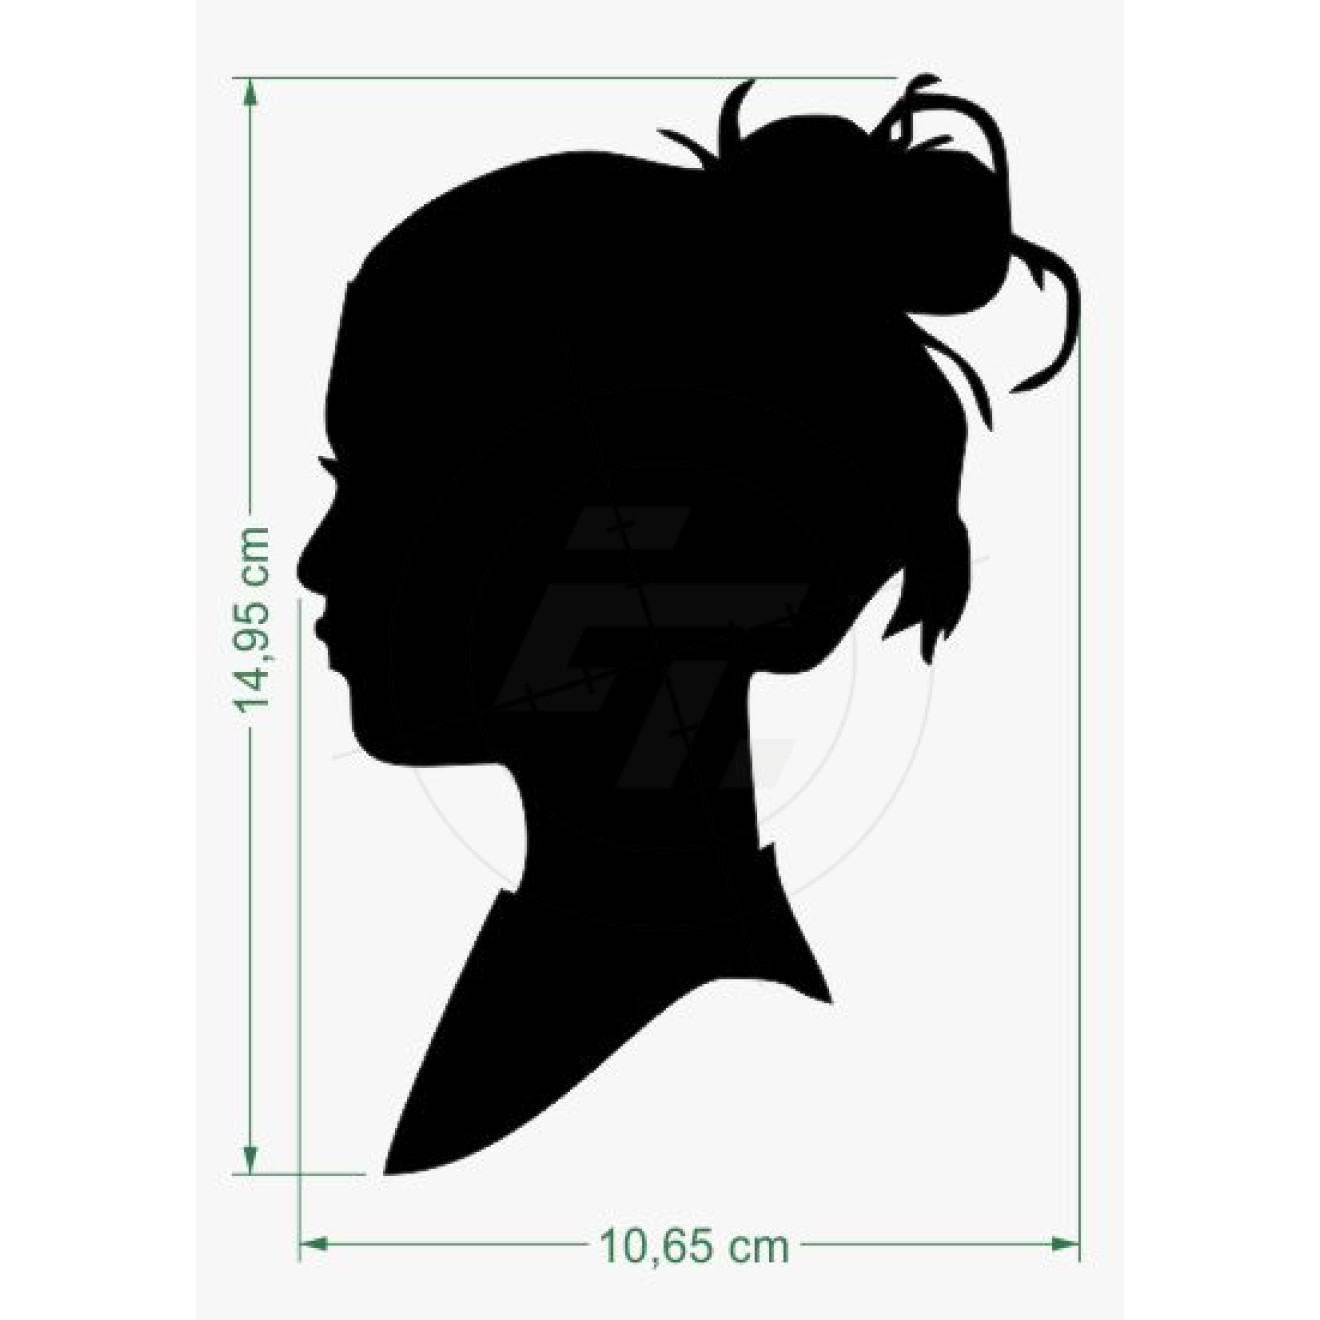 Frauenkopf, Silhouette, seitliches Profil